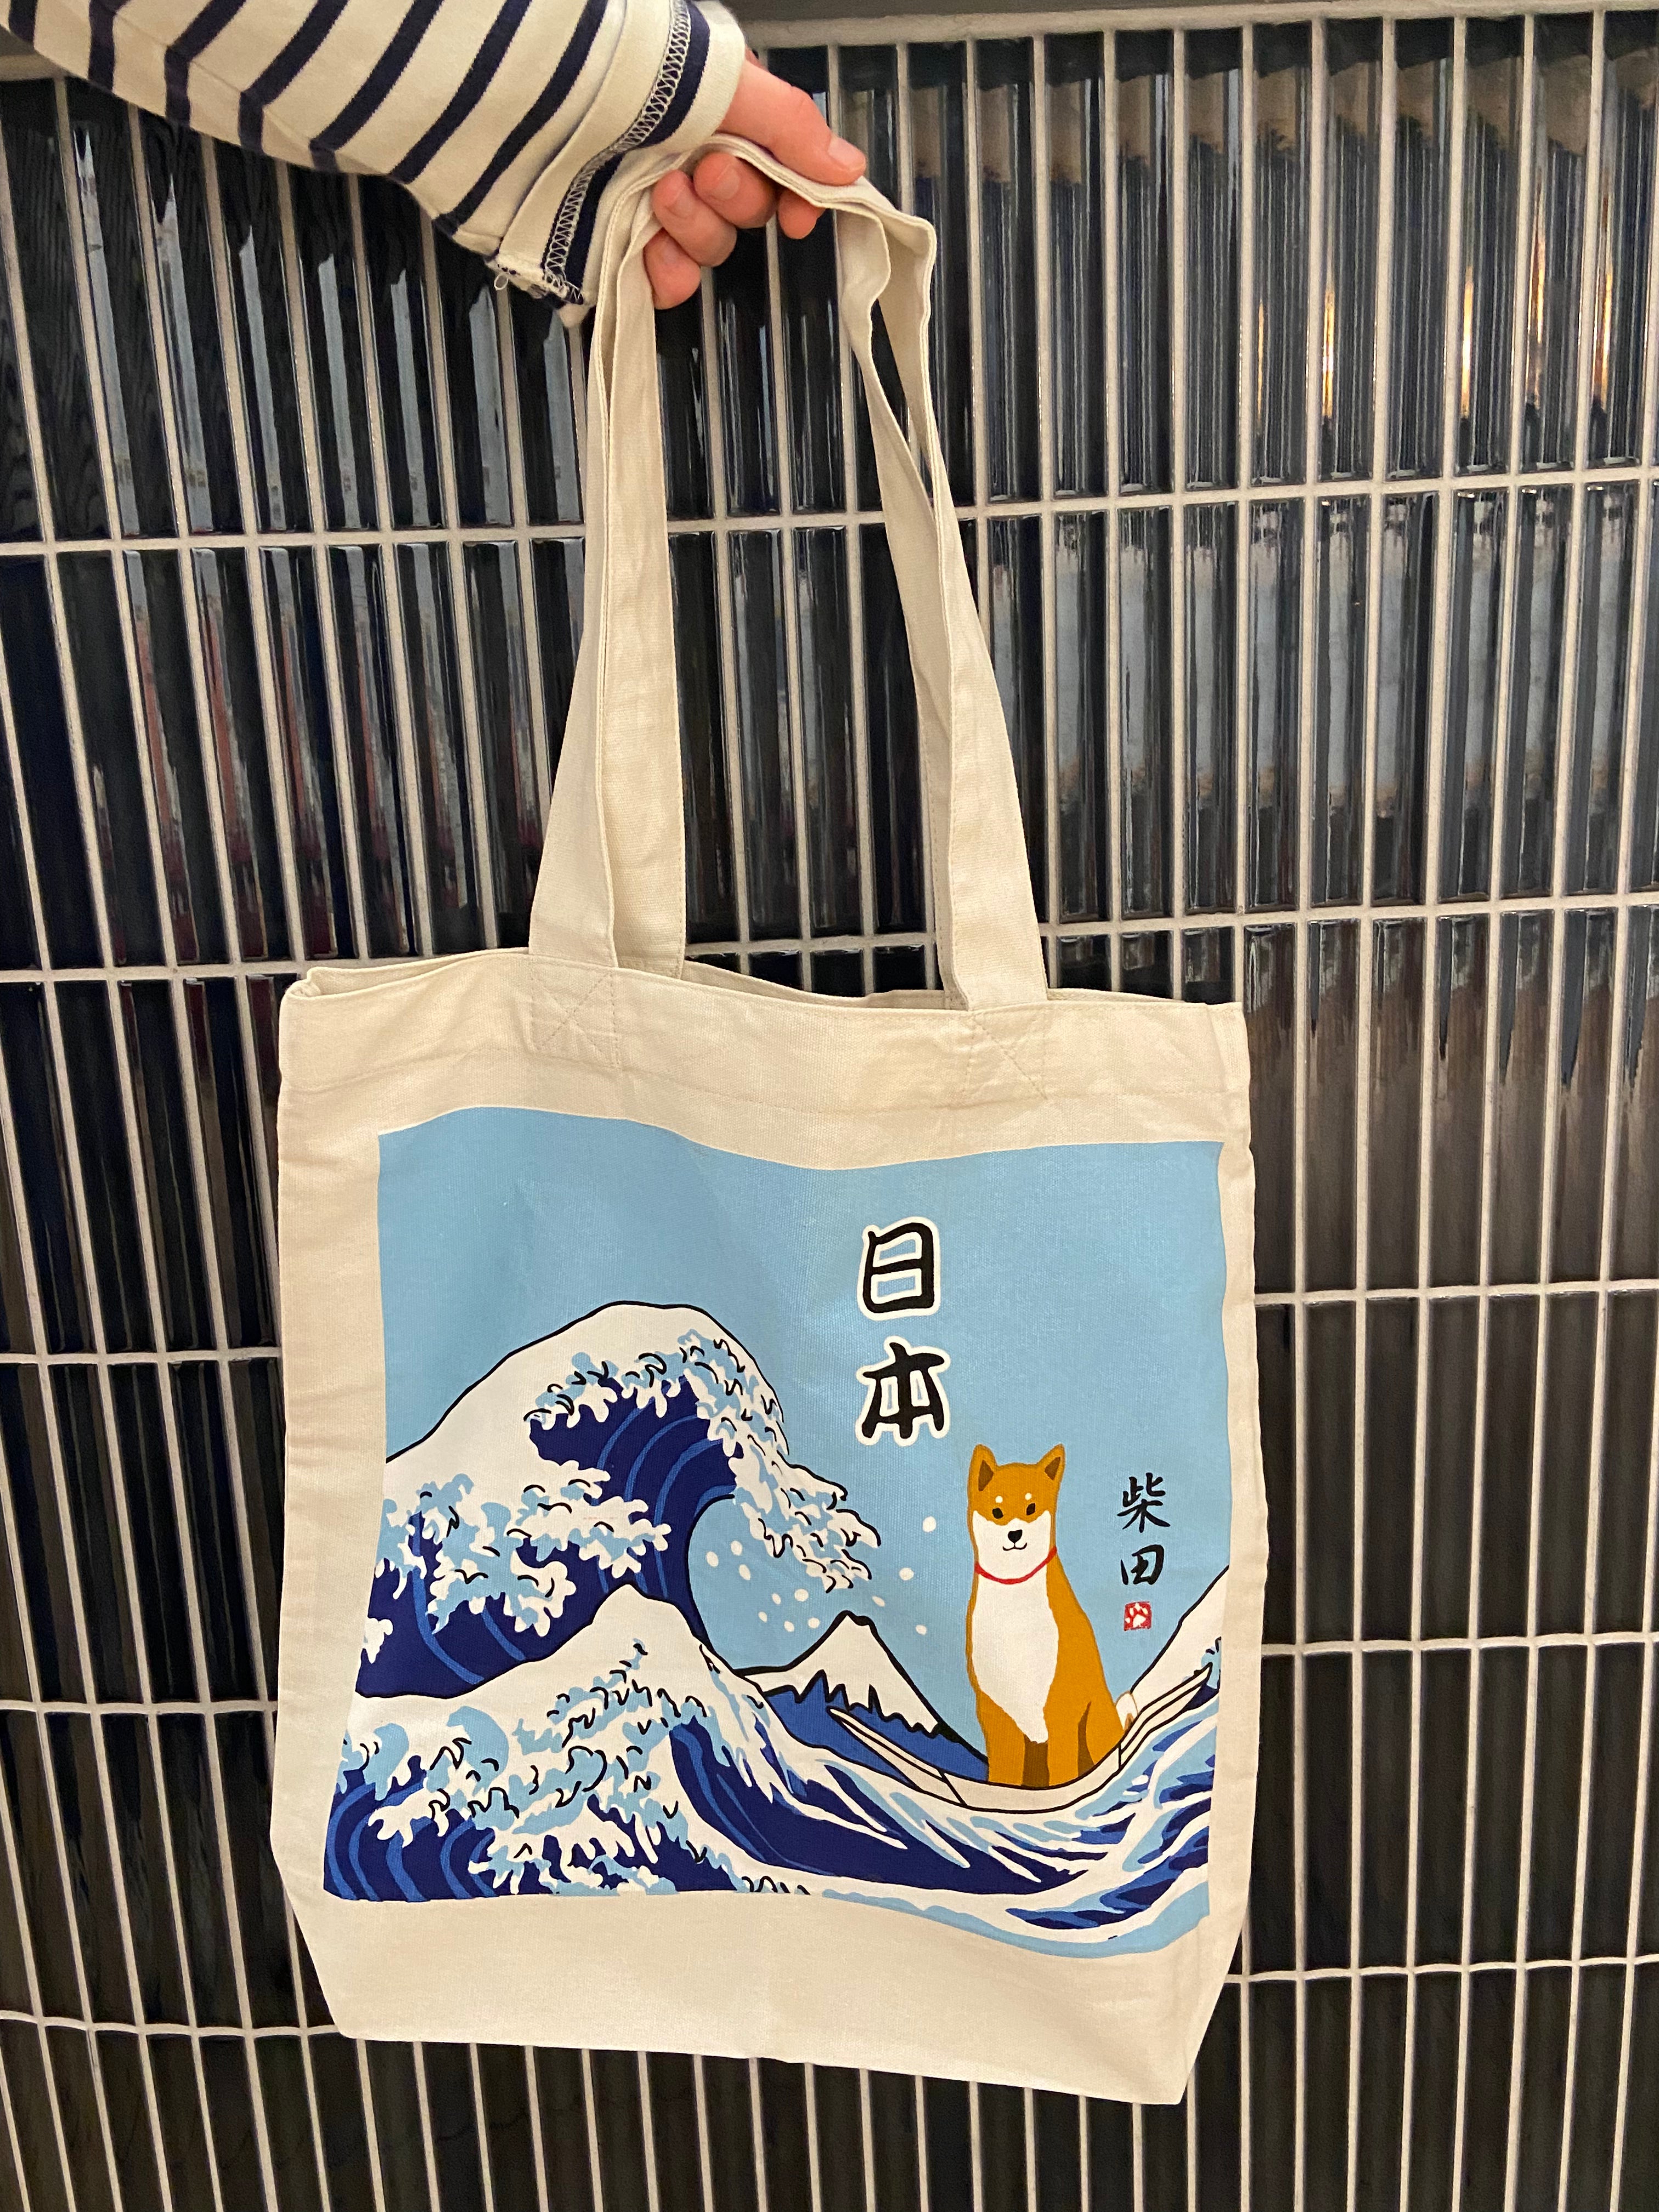 Tote bag with shiba at Kanagawa and Mount Fuji